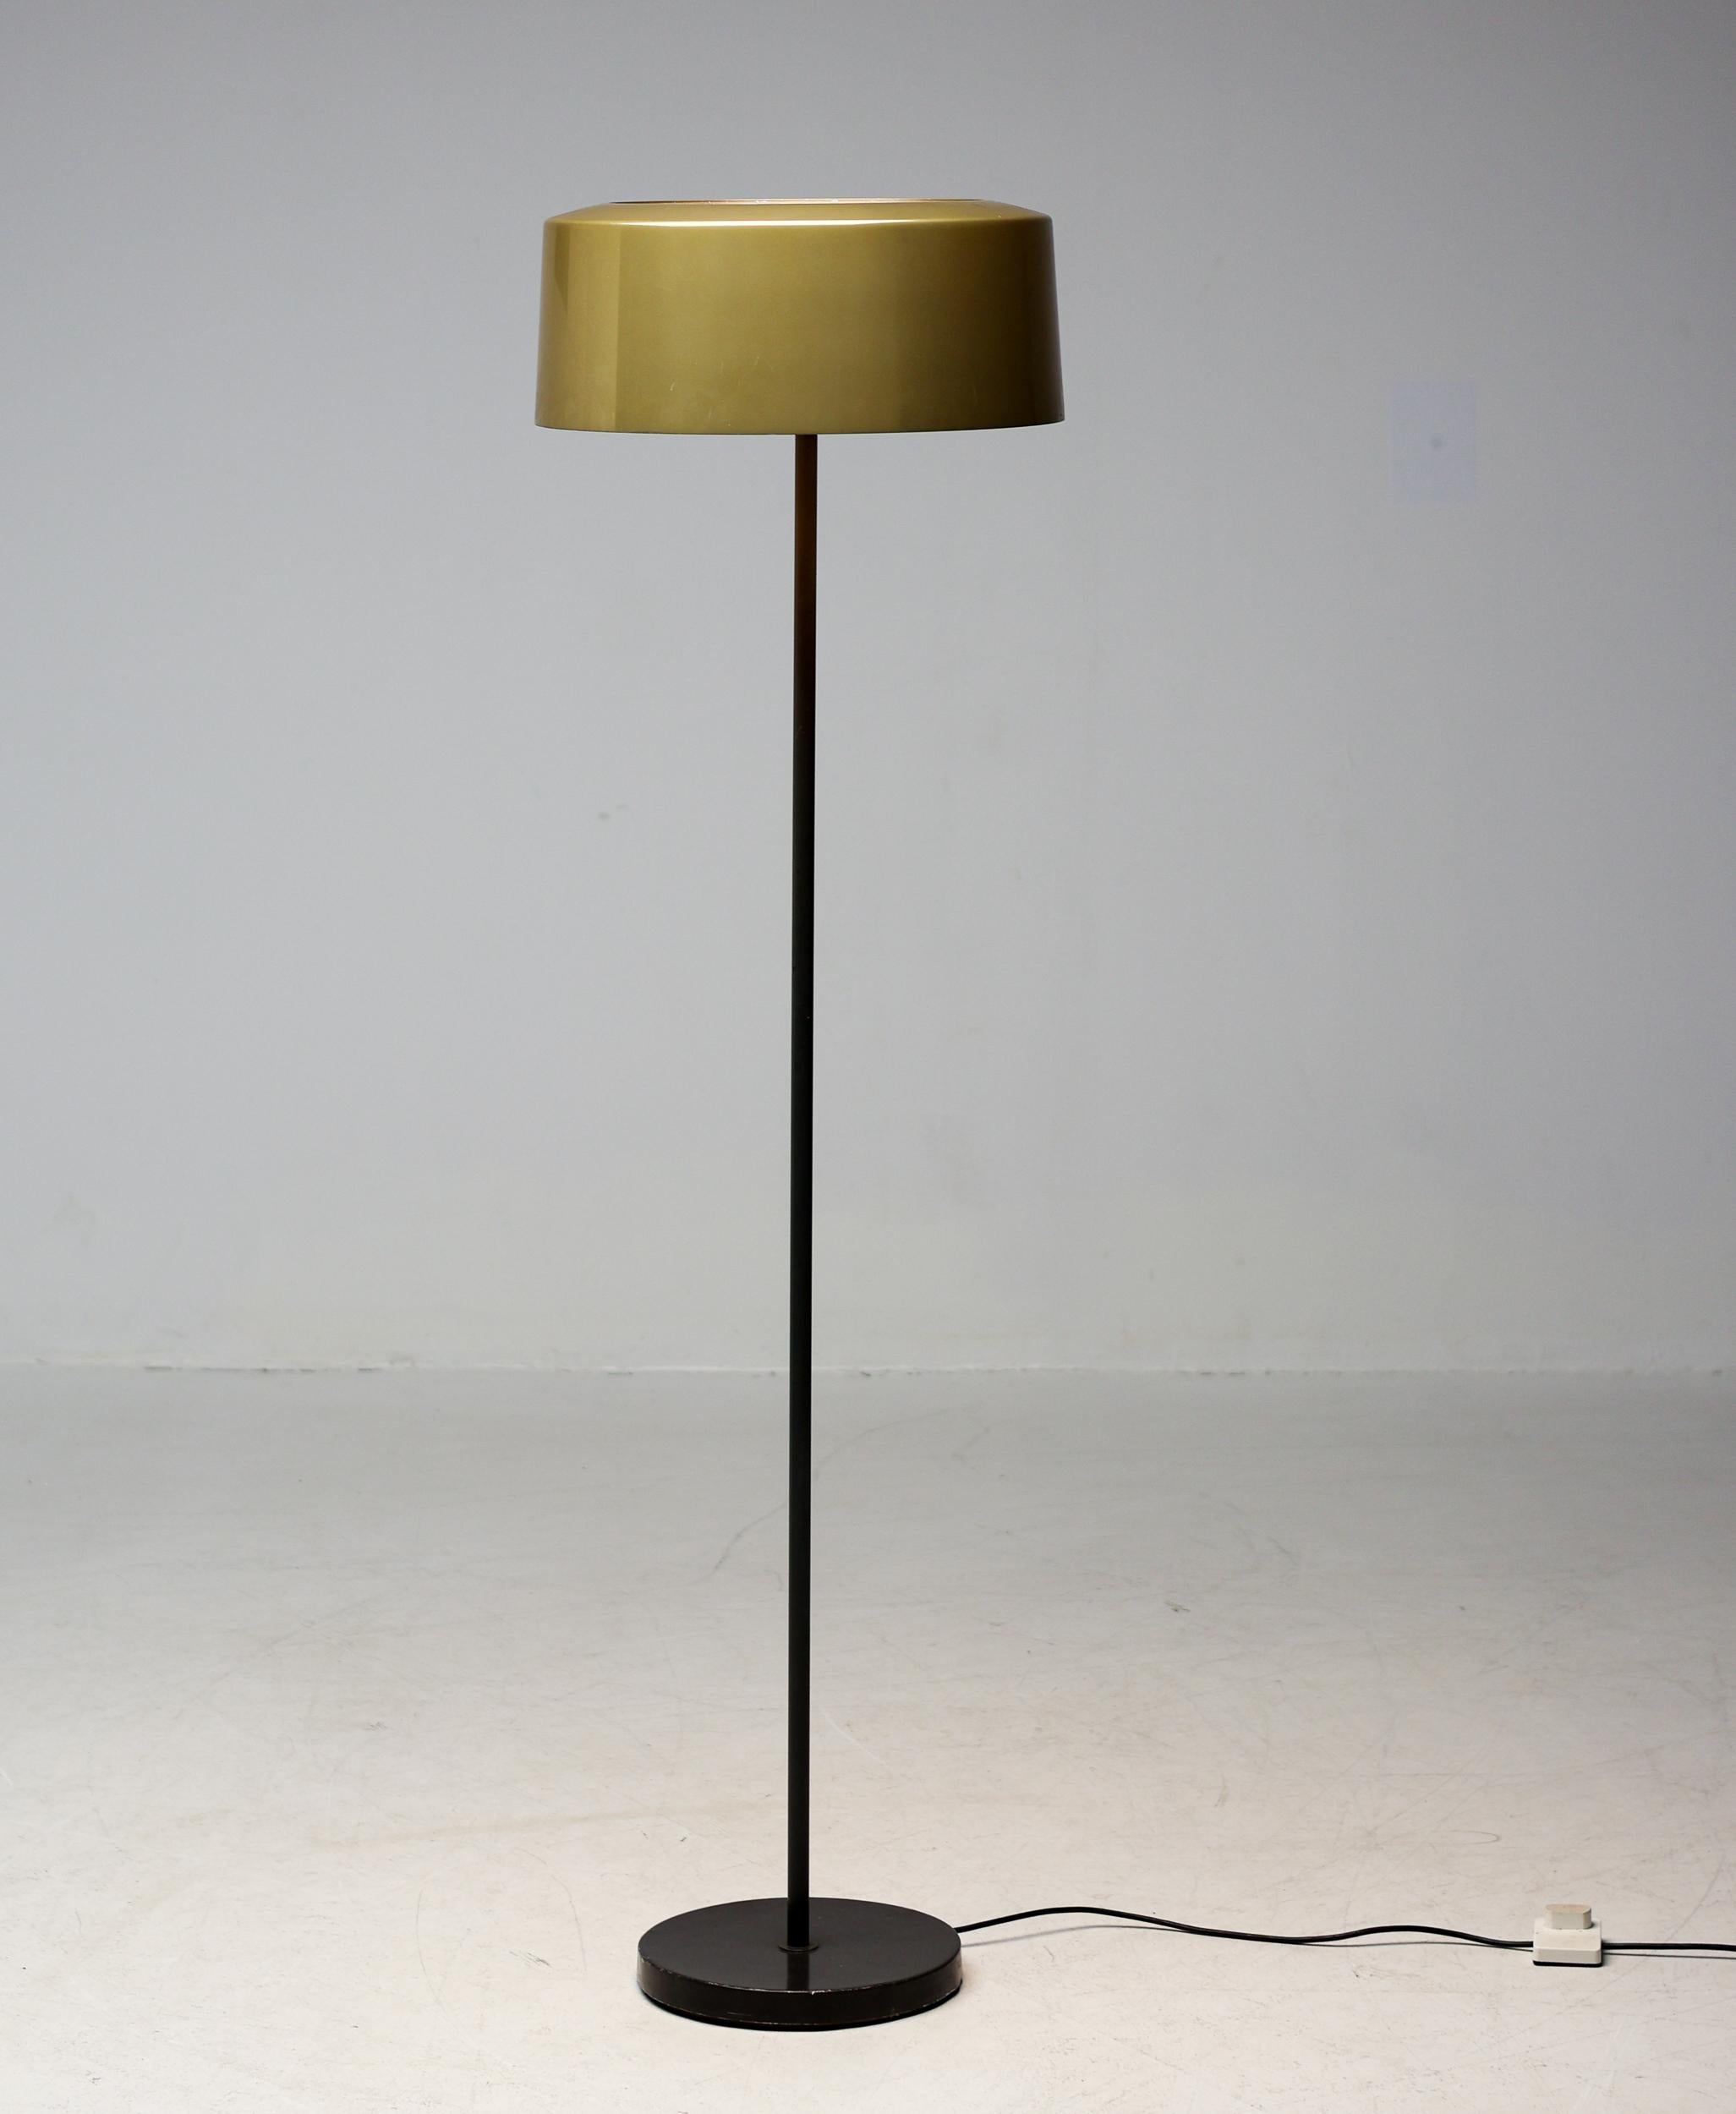 Eine schöne Stehlampe aus den 1950er Jahren mit einem bronzefarben emaillierten Aluminiumschirm. 
Entworfen von Lisa-Johansson Pape und hergestellt von Orno. 
Die Oberseite des Schirms ist mit Glas bedeckt, die Unterseite ist mit Lamellen versehen,